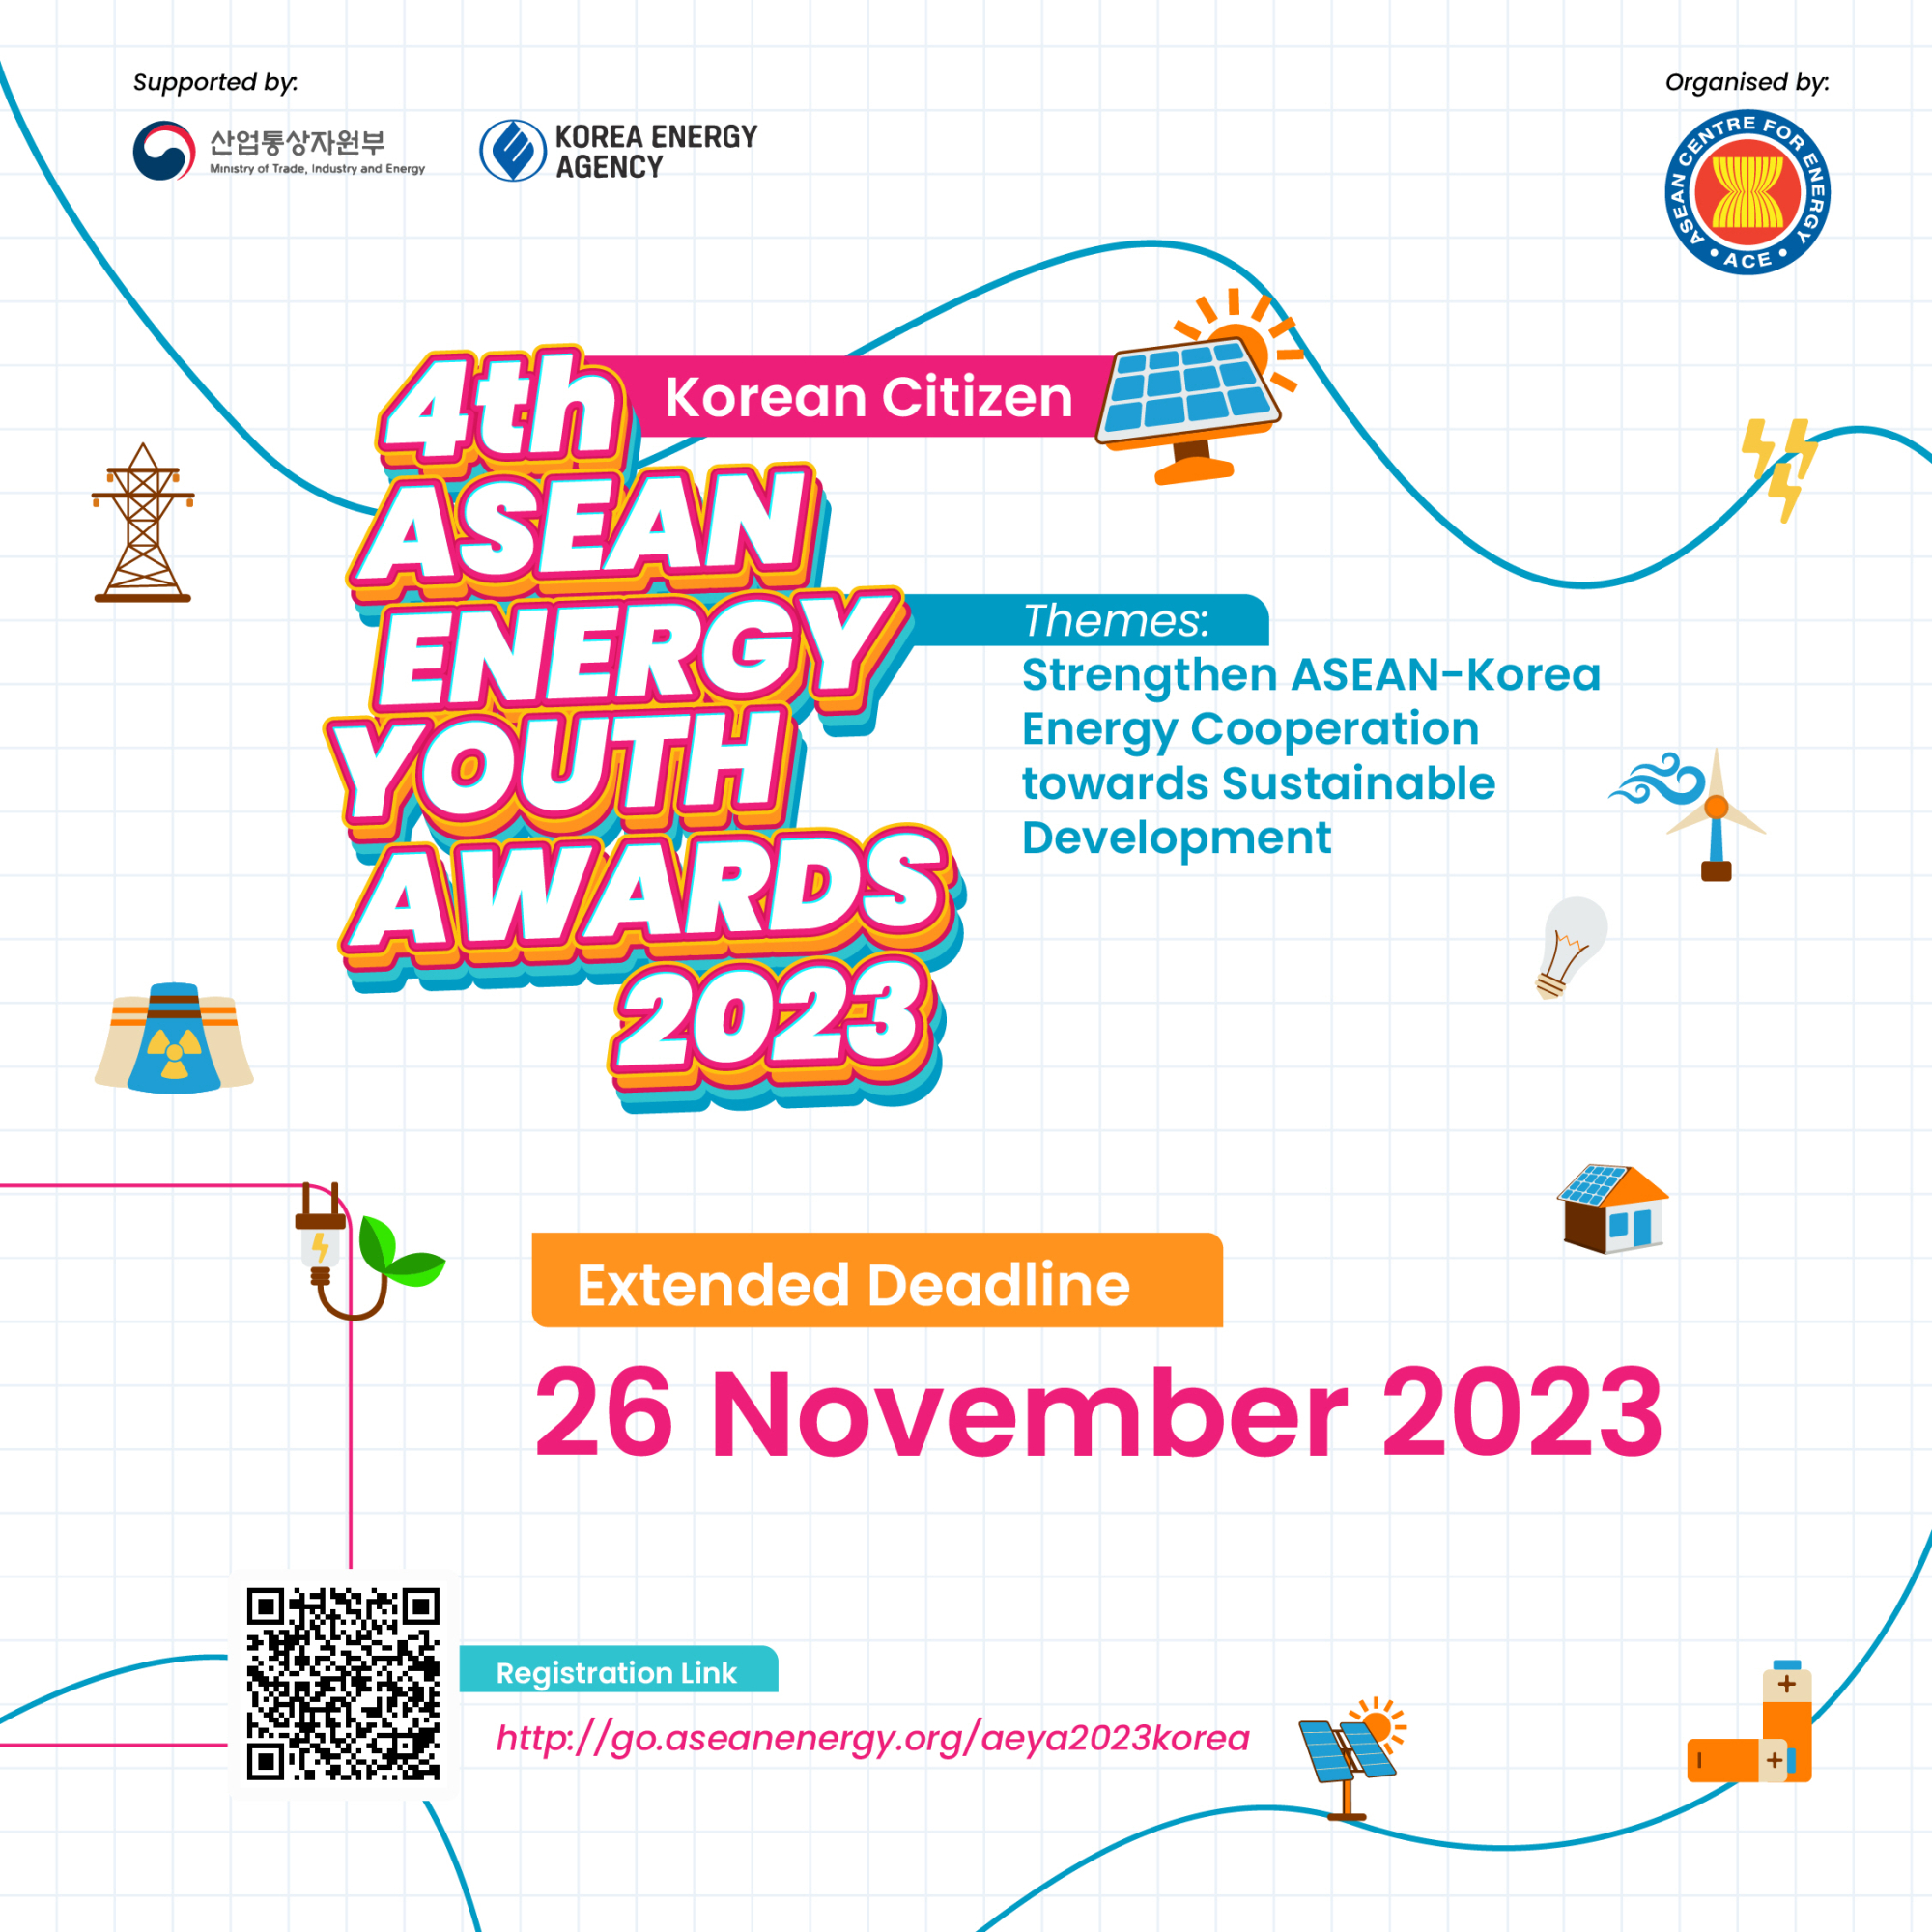 [운호고등학교-12355 (첨부) 한국에너지공단 기후국제협력실] 붙임1_4th ASEAN Energy Youth Awards 포스터